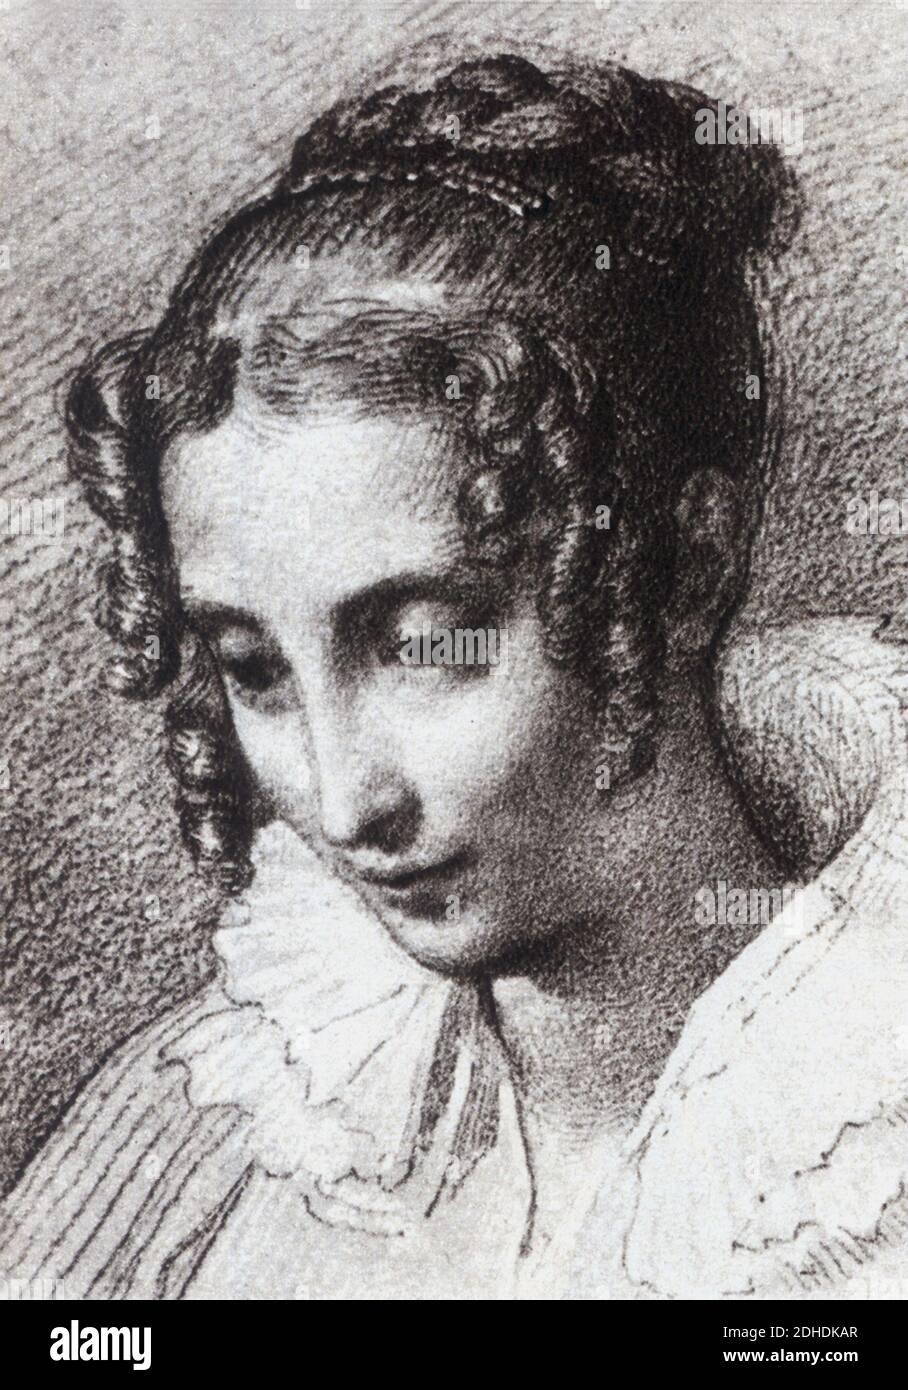 La contessa TERESA BORRI STAMPA ( 1807 - 1861 ) , la seconda moglie ( 1837 ) del più celebre scrittore italiano ALESSANDRO MANZONI ( 1785 - 1873 ) , autore del libro ' i Promessi sposi ' ( 1827 - 1842 ) - SCRITTORE - LETTERATO - LETTERATURA - LETTERATURA - ritratto - ritratto - coletto - colletto - boccoli - ricci --- Archivio GBB Foto Stock